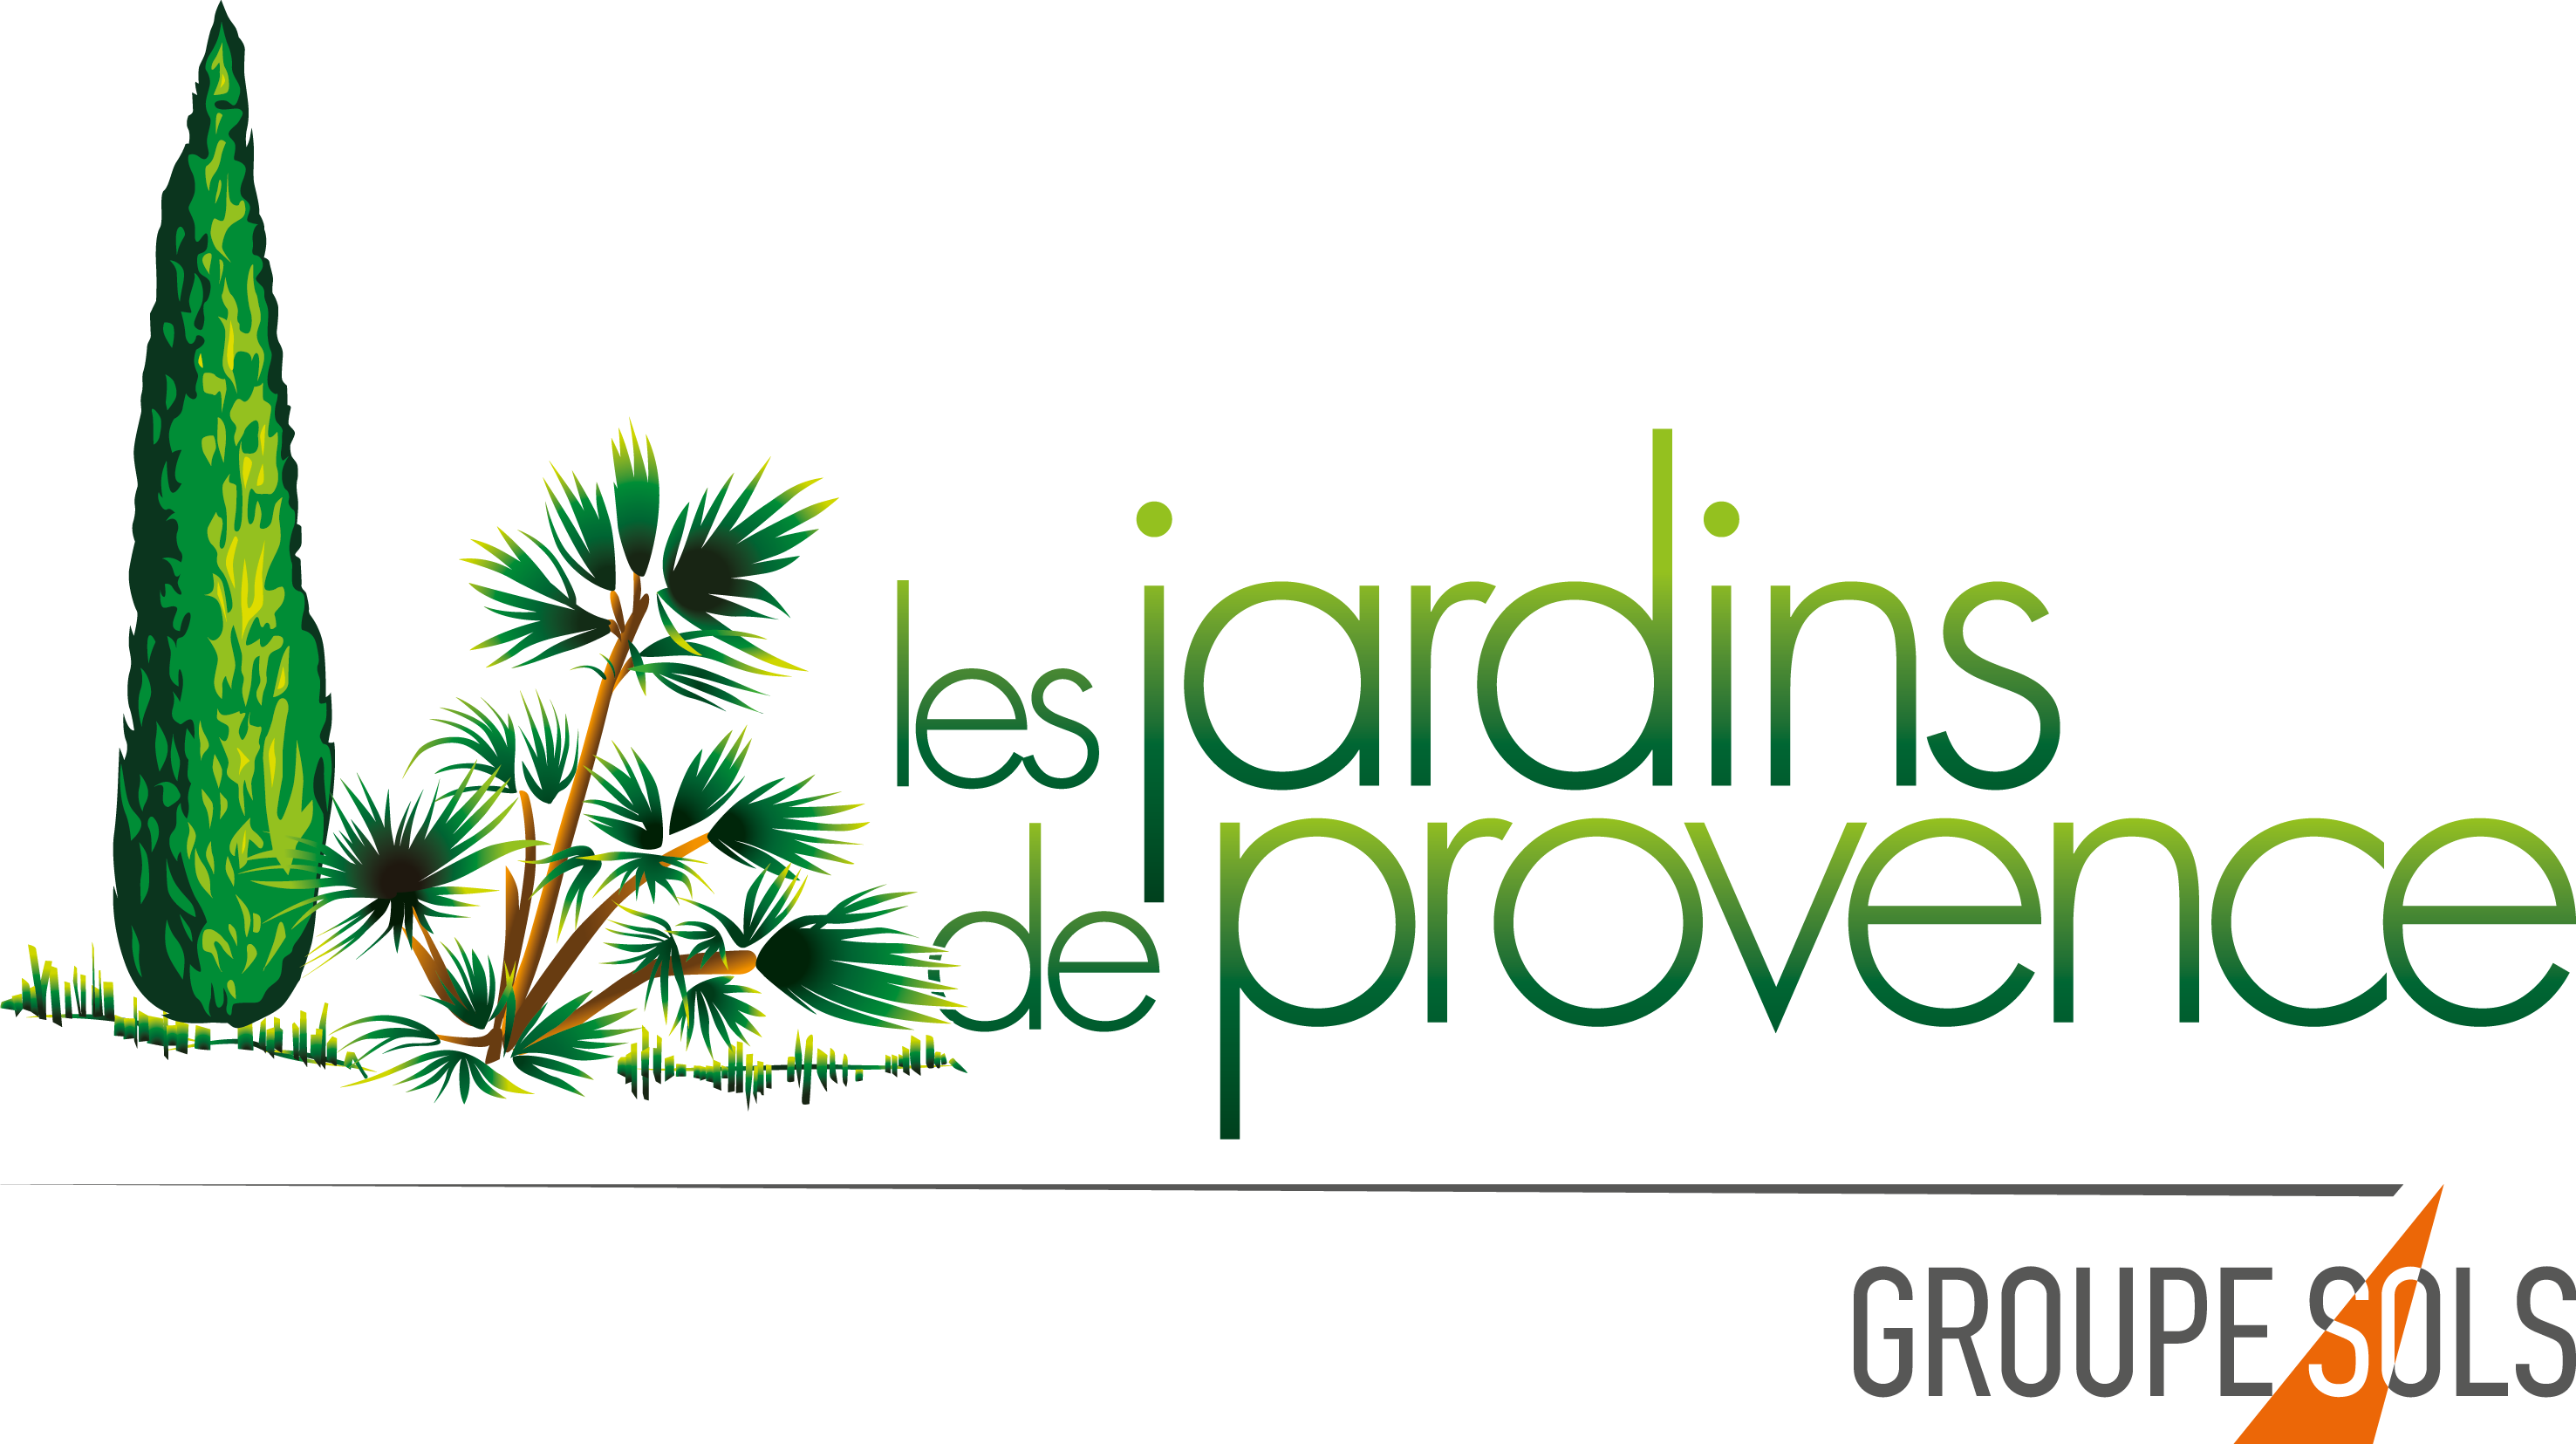 Jardins de Provence